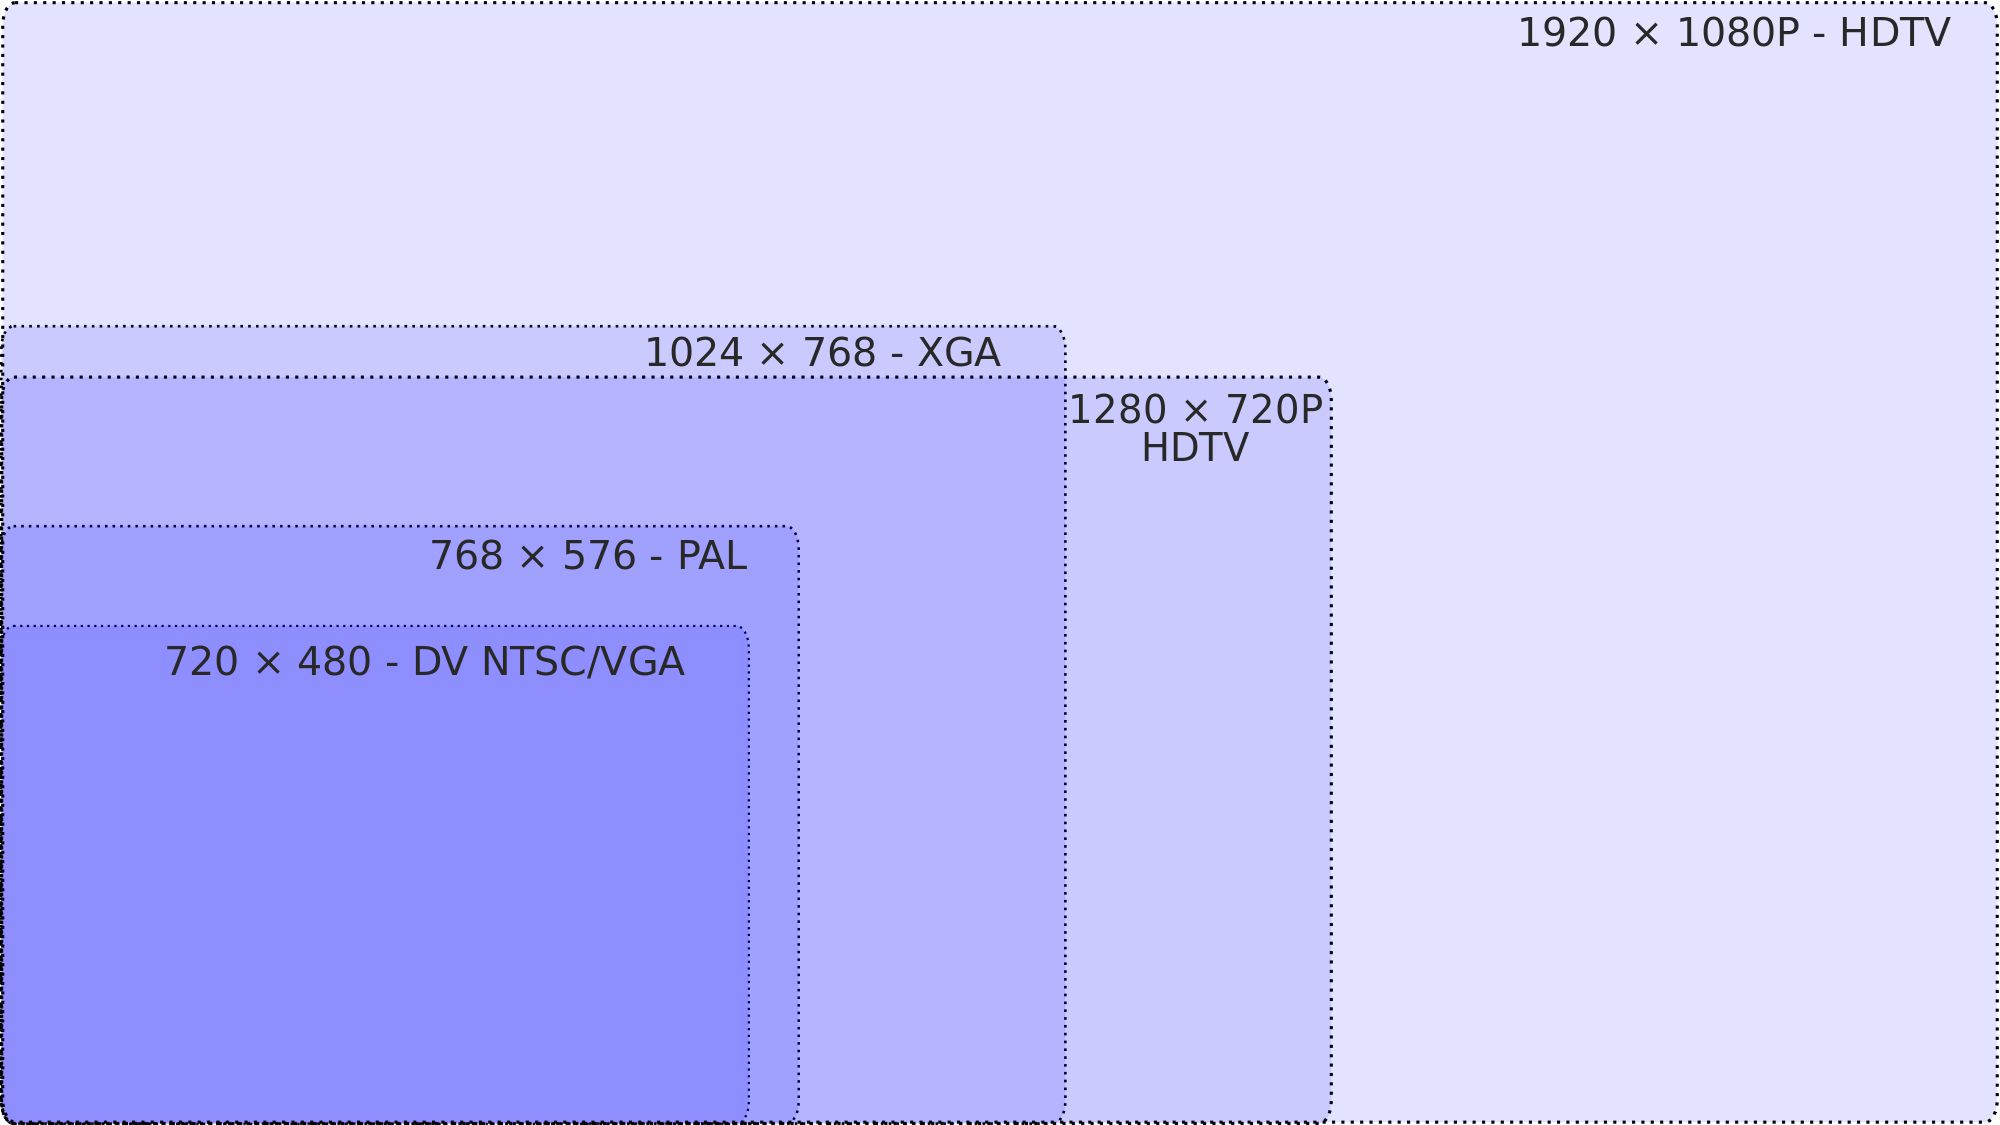 Videoupplösningsdiagram - NTSC till HDTV